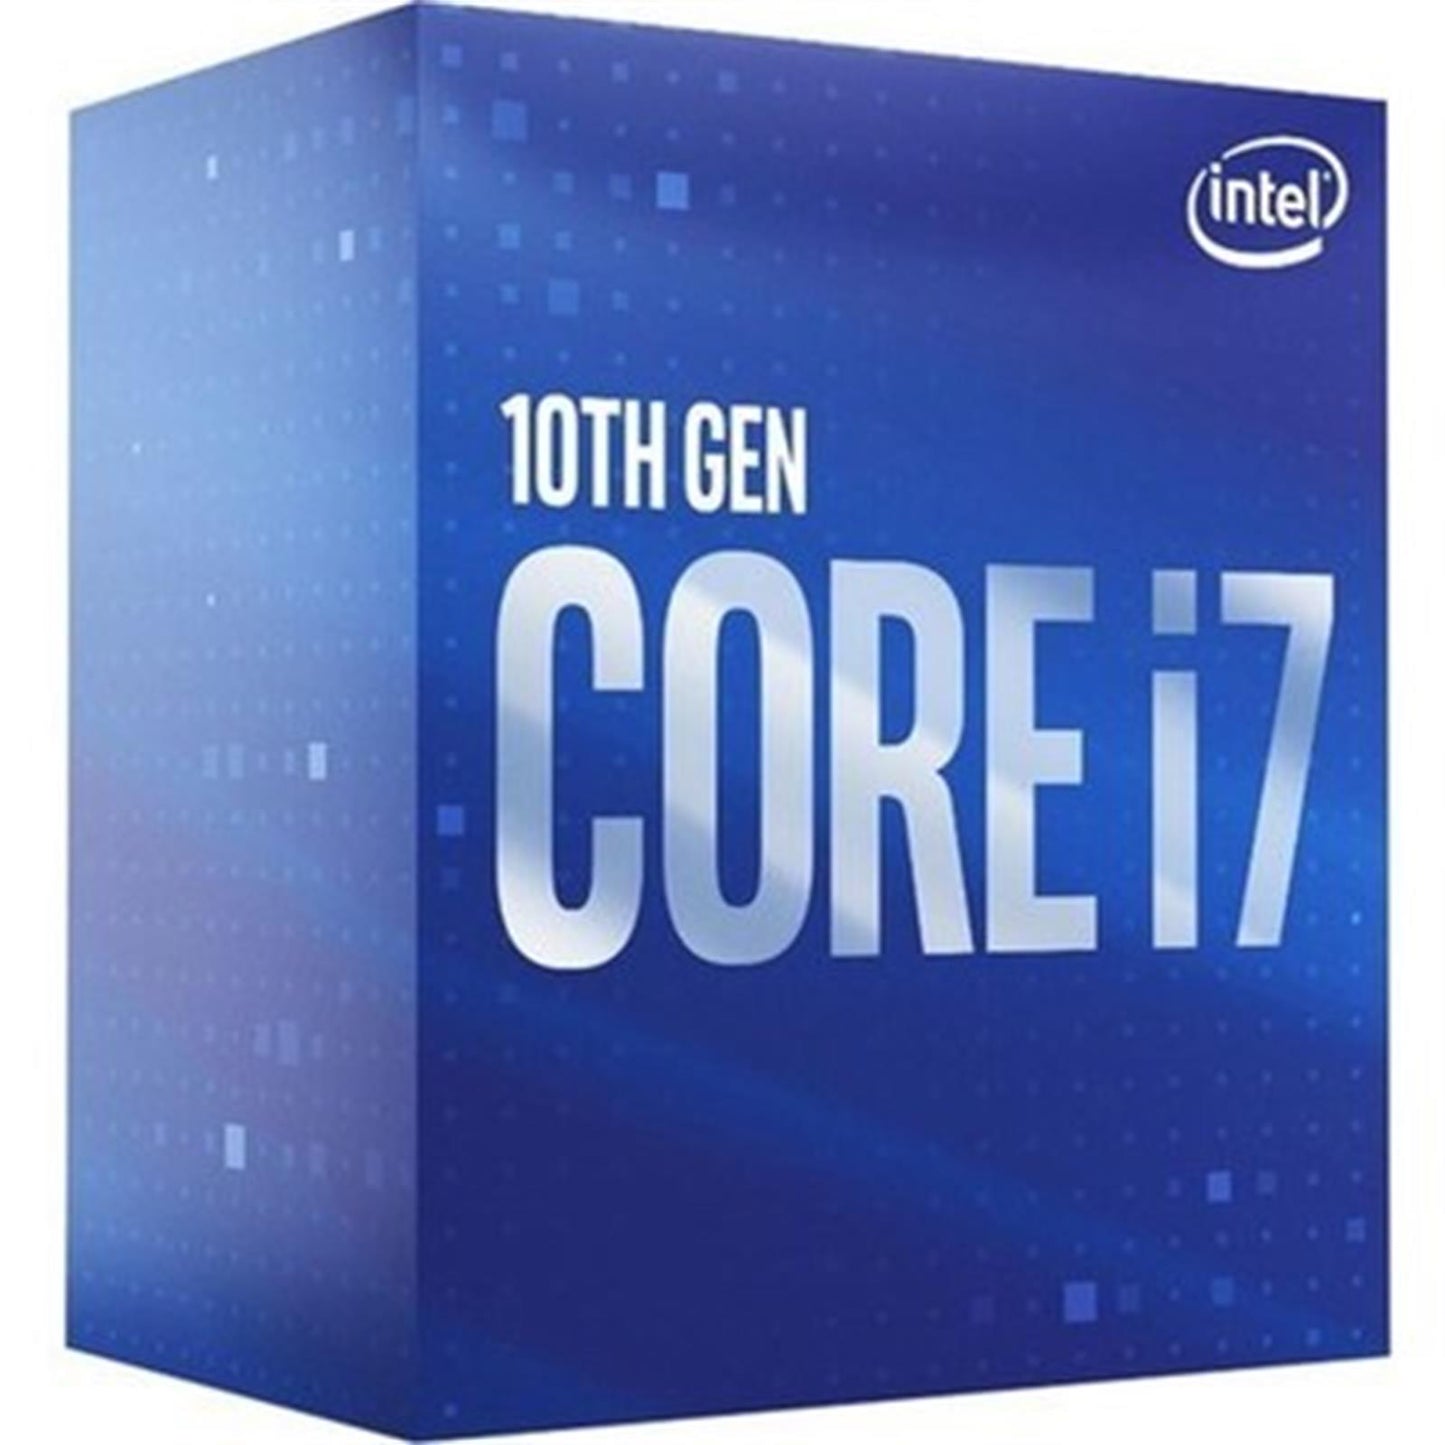 Intel Core i7 10700F CPU/Processor 2.9 GHz 16 MB Smart Cache Box